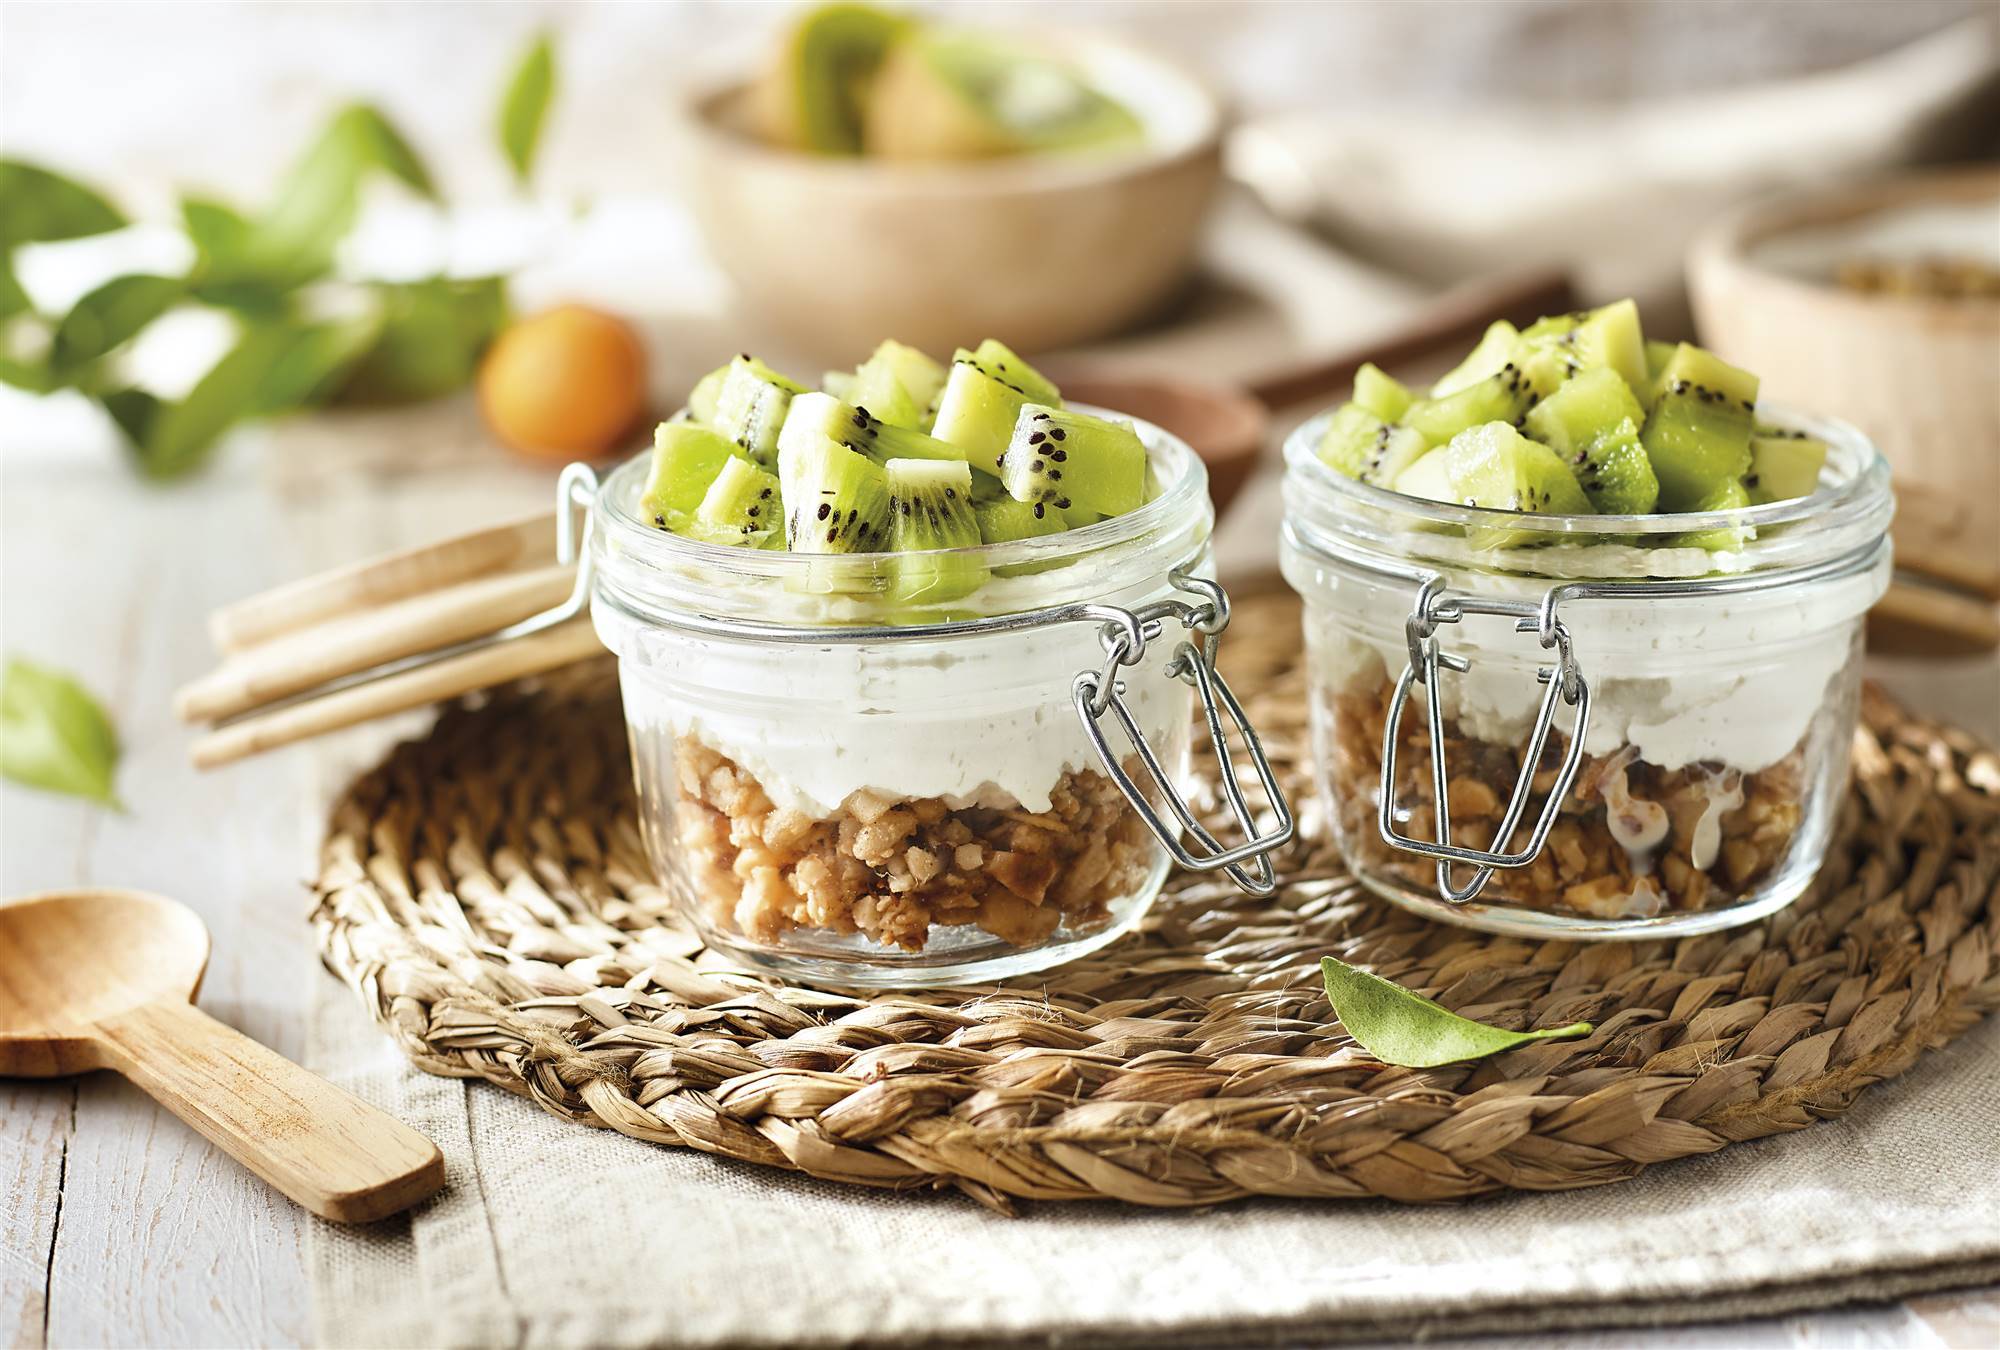 Desayunos saludables: receta de vasitos de kiwi fresco y cremoso de coco con base de granola. 